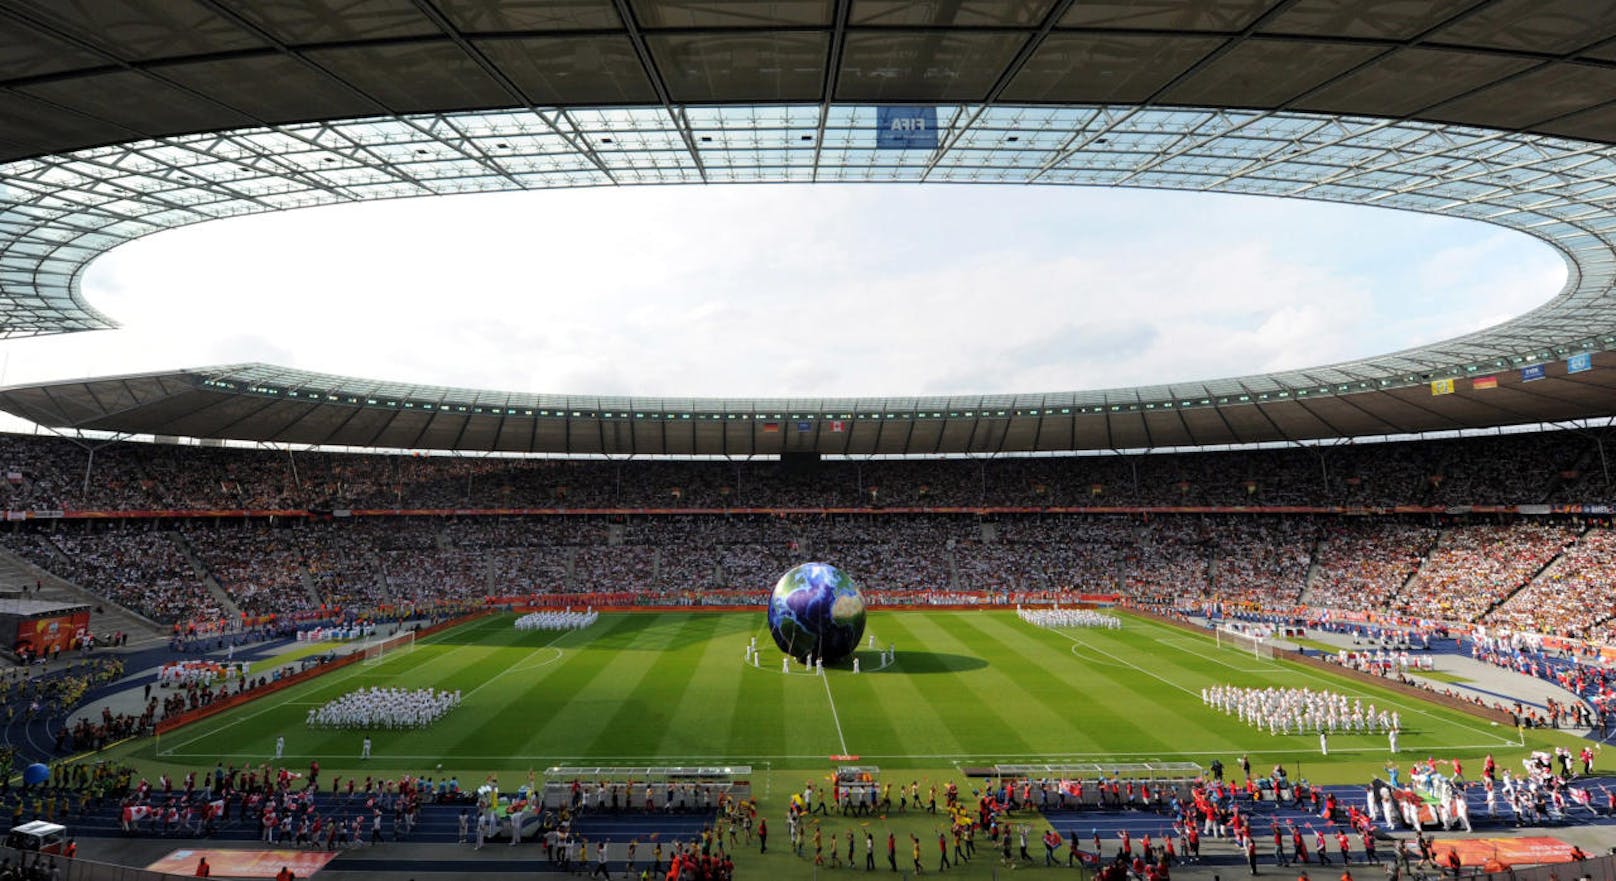 Unverkennbar ist das Berliner Olympiastadion. 74.475 Zuschauer finden hier Platz. Das Oval war 2006 Schauplatz des WM-Finales.